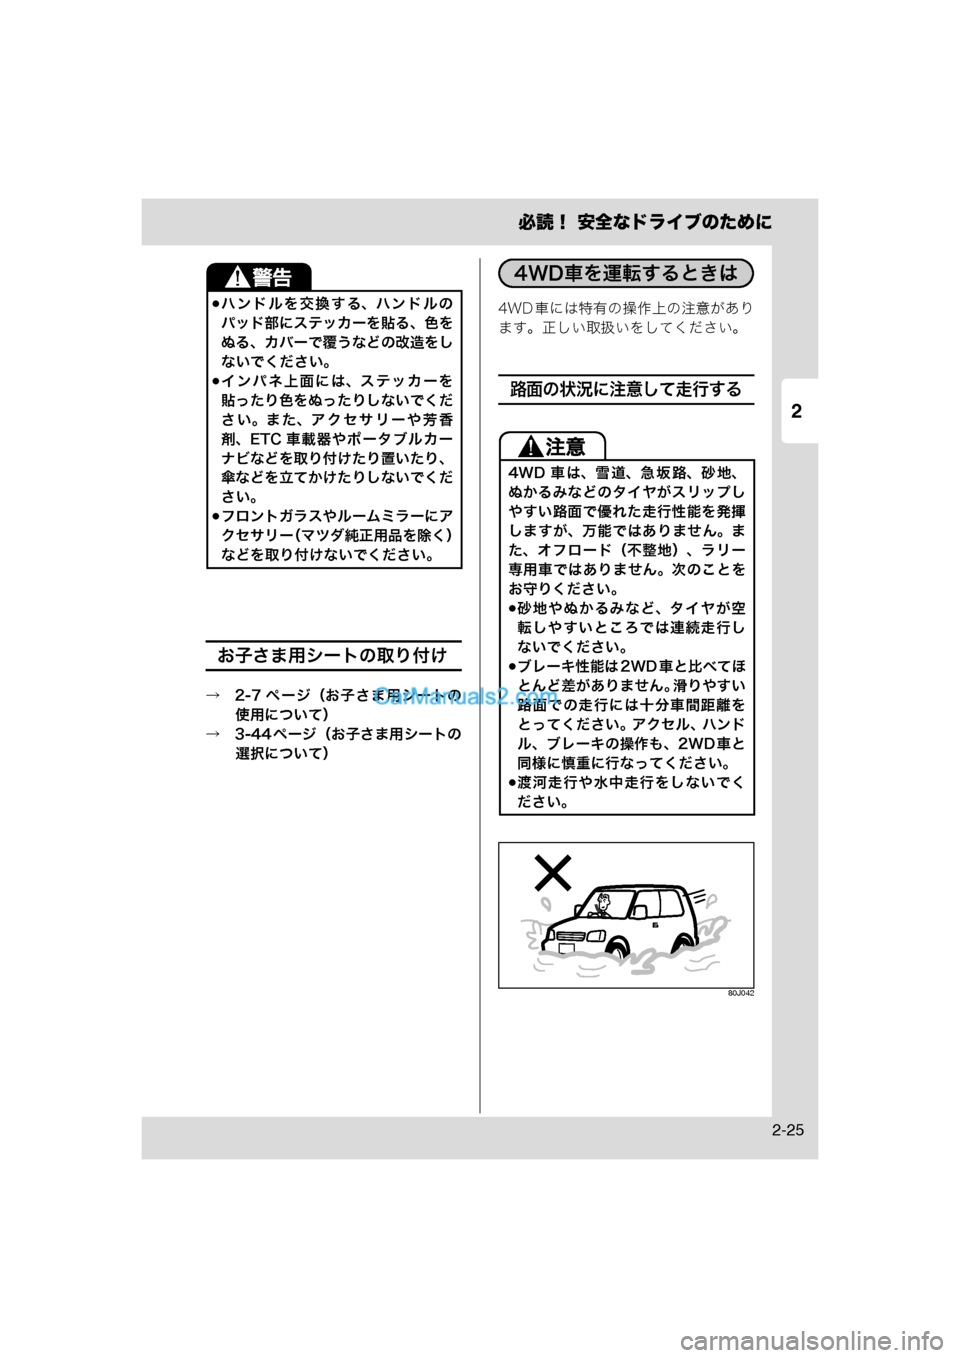 MAZDA MODEL CARROL 2013  取扱説明書 (キャロル) (in Japanese) 2
必読！ 安全なドライブのために
2-25
お子さま用シートの取り付け
→　2-7 ページ（お子さま用シートの使用について）
→　3-44 ページ（お子さま用